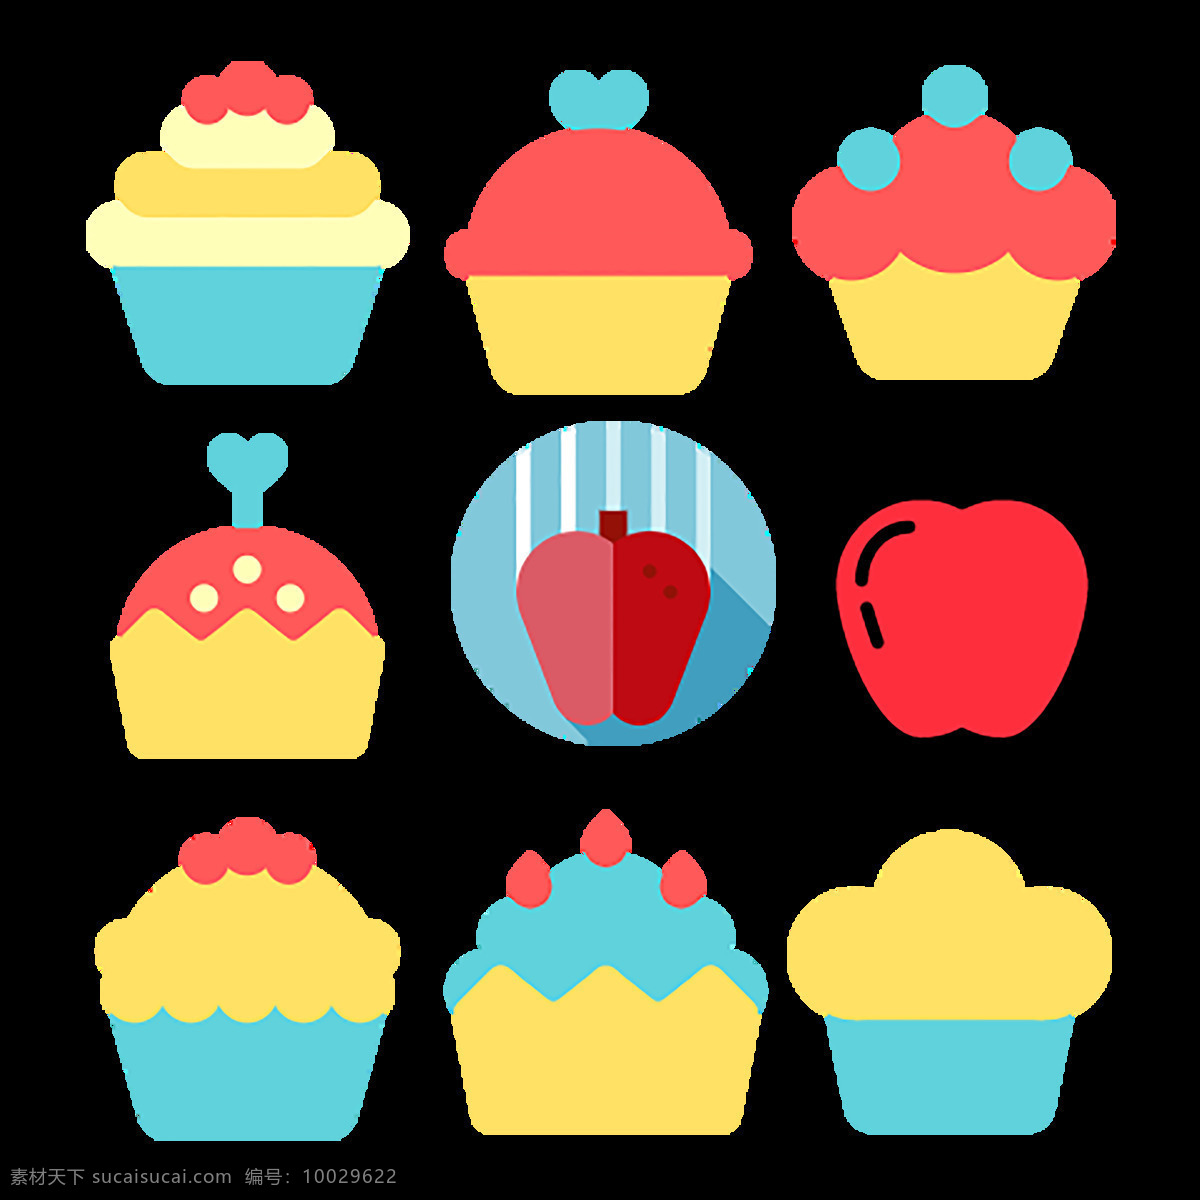 食物 饮品 icon 图标素材 冷饮 冰激凌 苹果 卡通图案 图案 卡通png 商务卡通图案 png图 图案素材 扁平化png